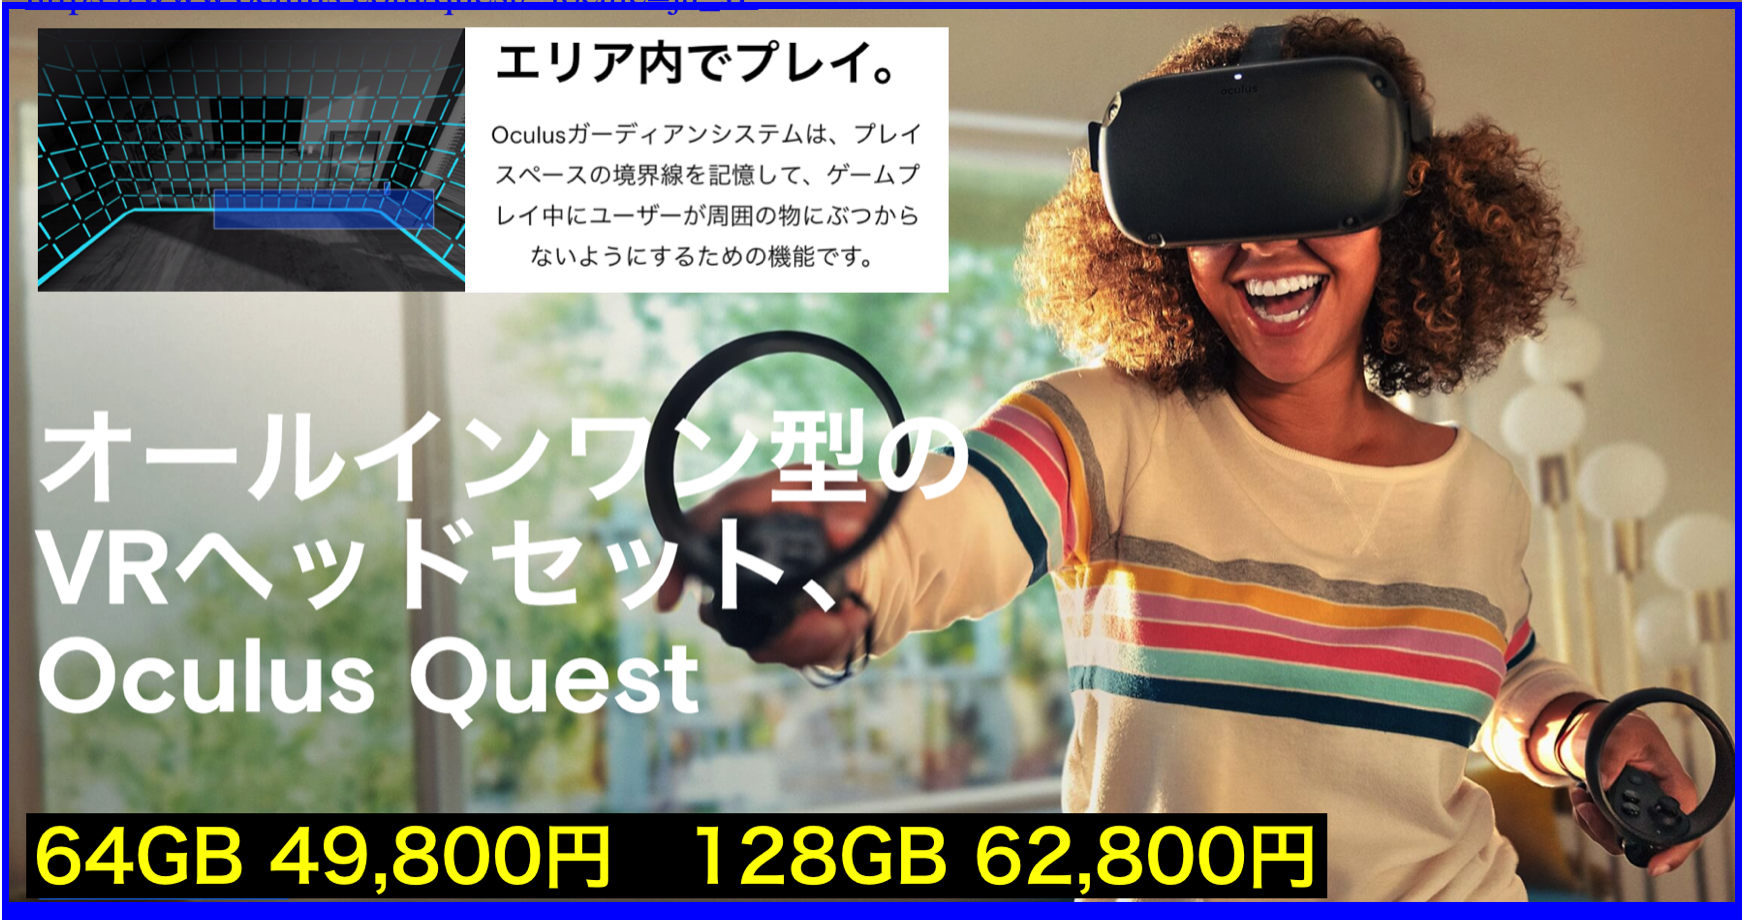 Oculus Quest初期設定とレビュー:随時更新 #OculusQuest